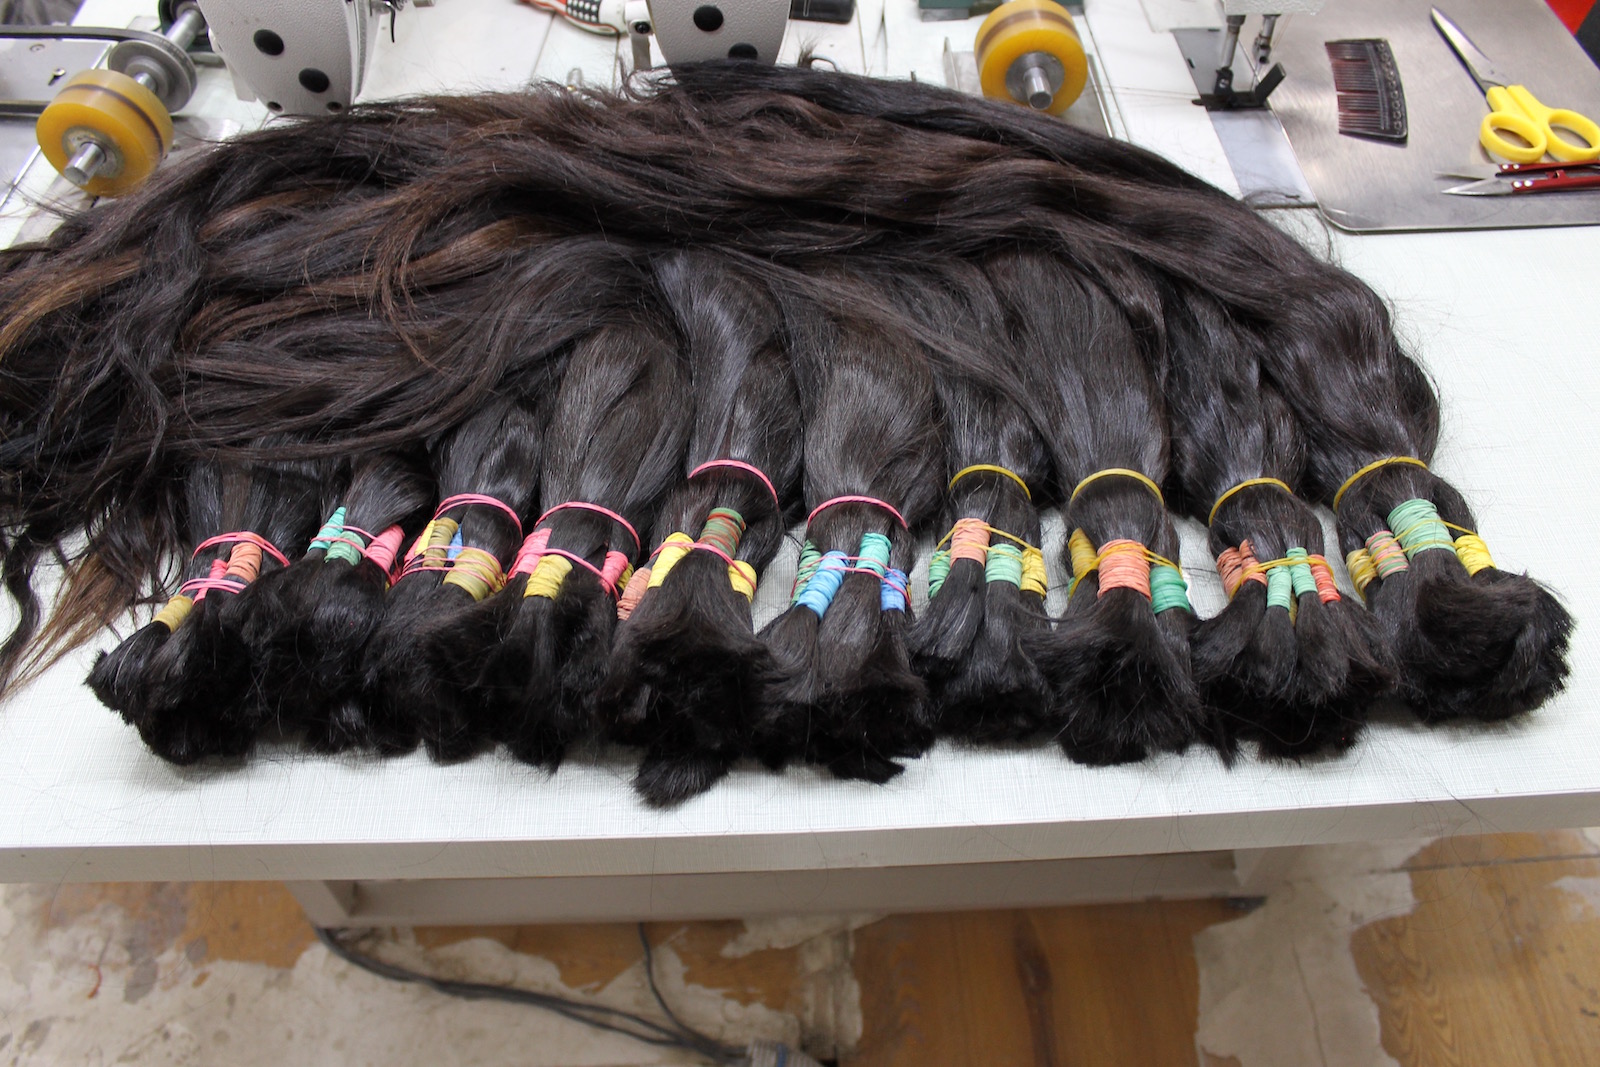 Волосы оптом от производителя. Волосы для наращивания сырье. Узбекские волосы для наращивания. Сырьевой волос для наращивания. Фабрика волос Узбекистан.